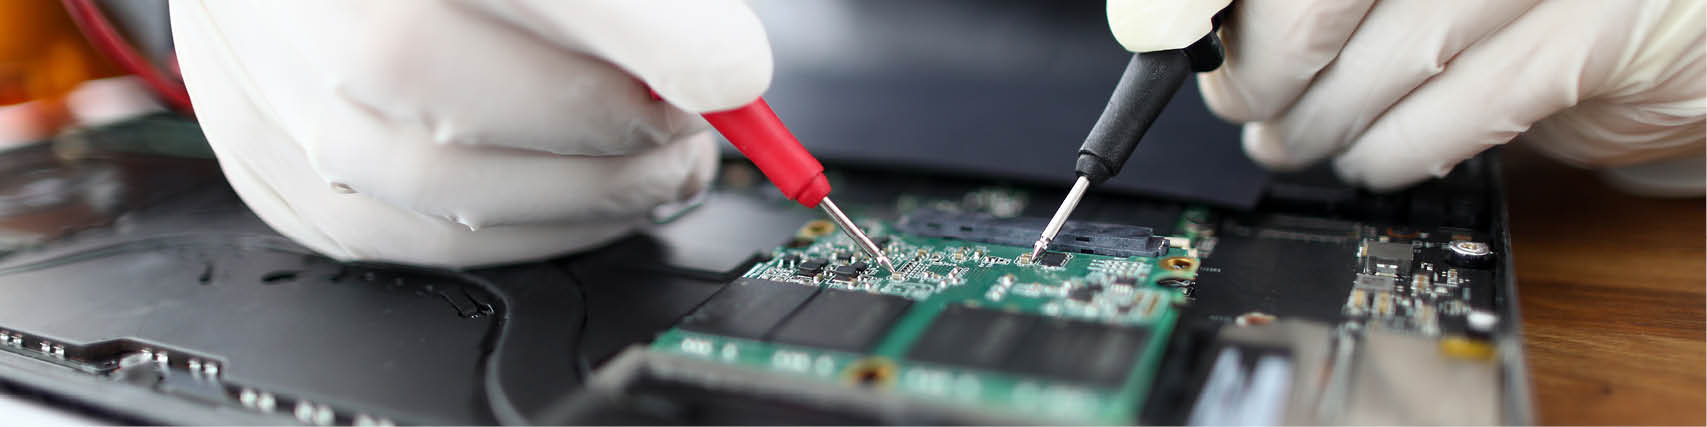 Reparaturmethoden und Prüfverfahren in  der Elektronik